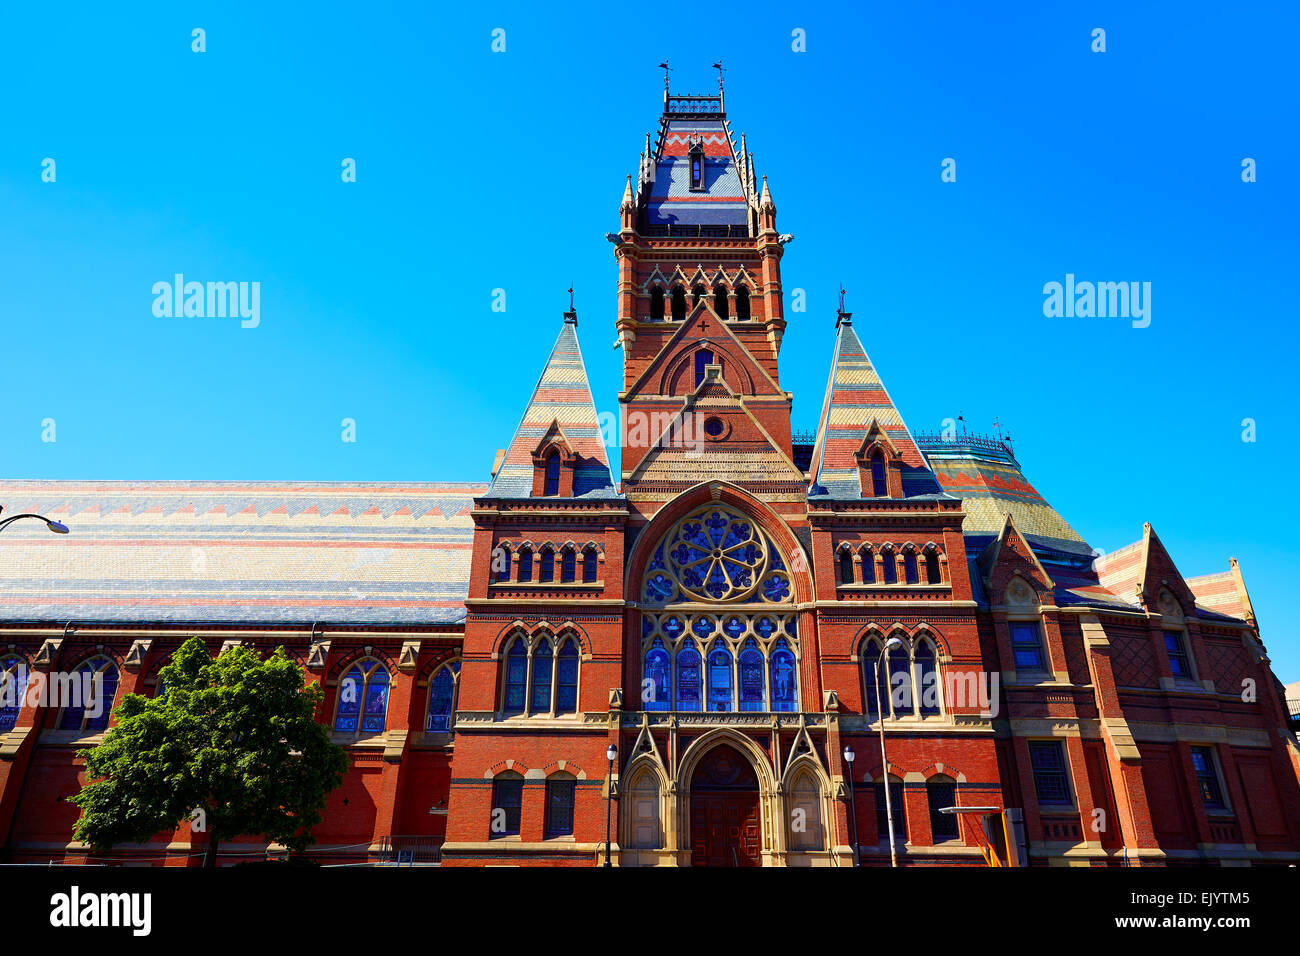 L'Université de Harvard de Boston bâtiment historique de Cambridge au Massachusetts Banque D'Images